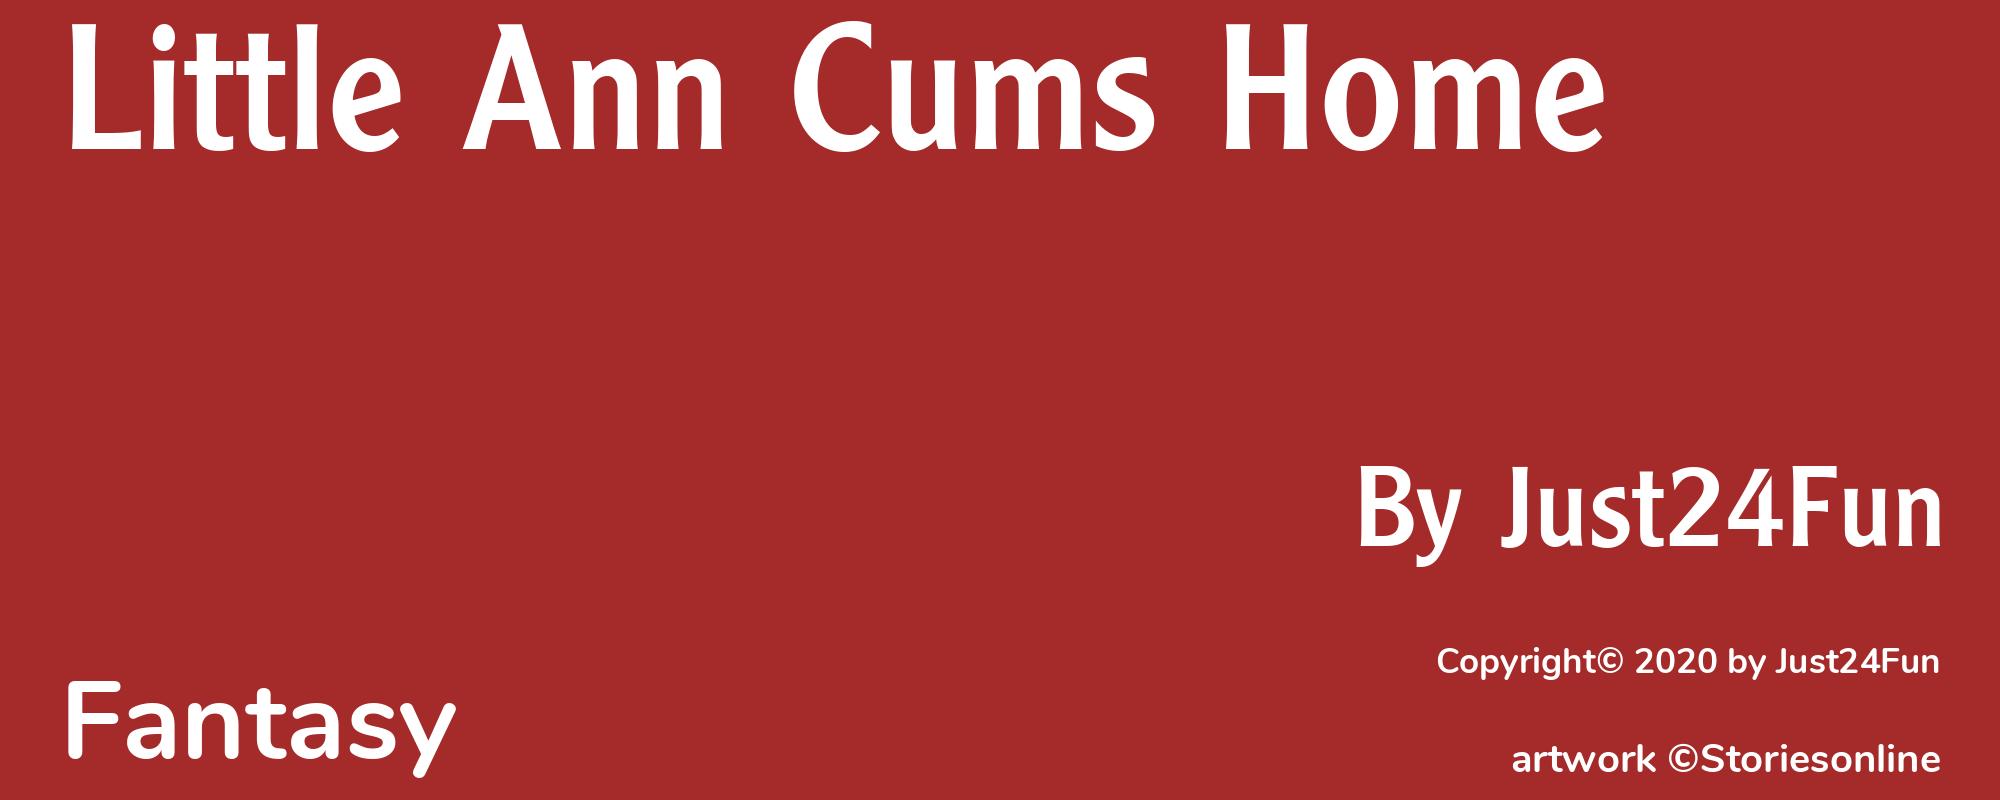 Little Ann Cums Home - Cover